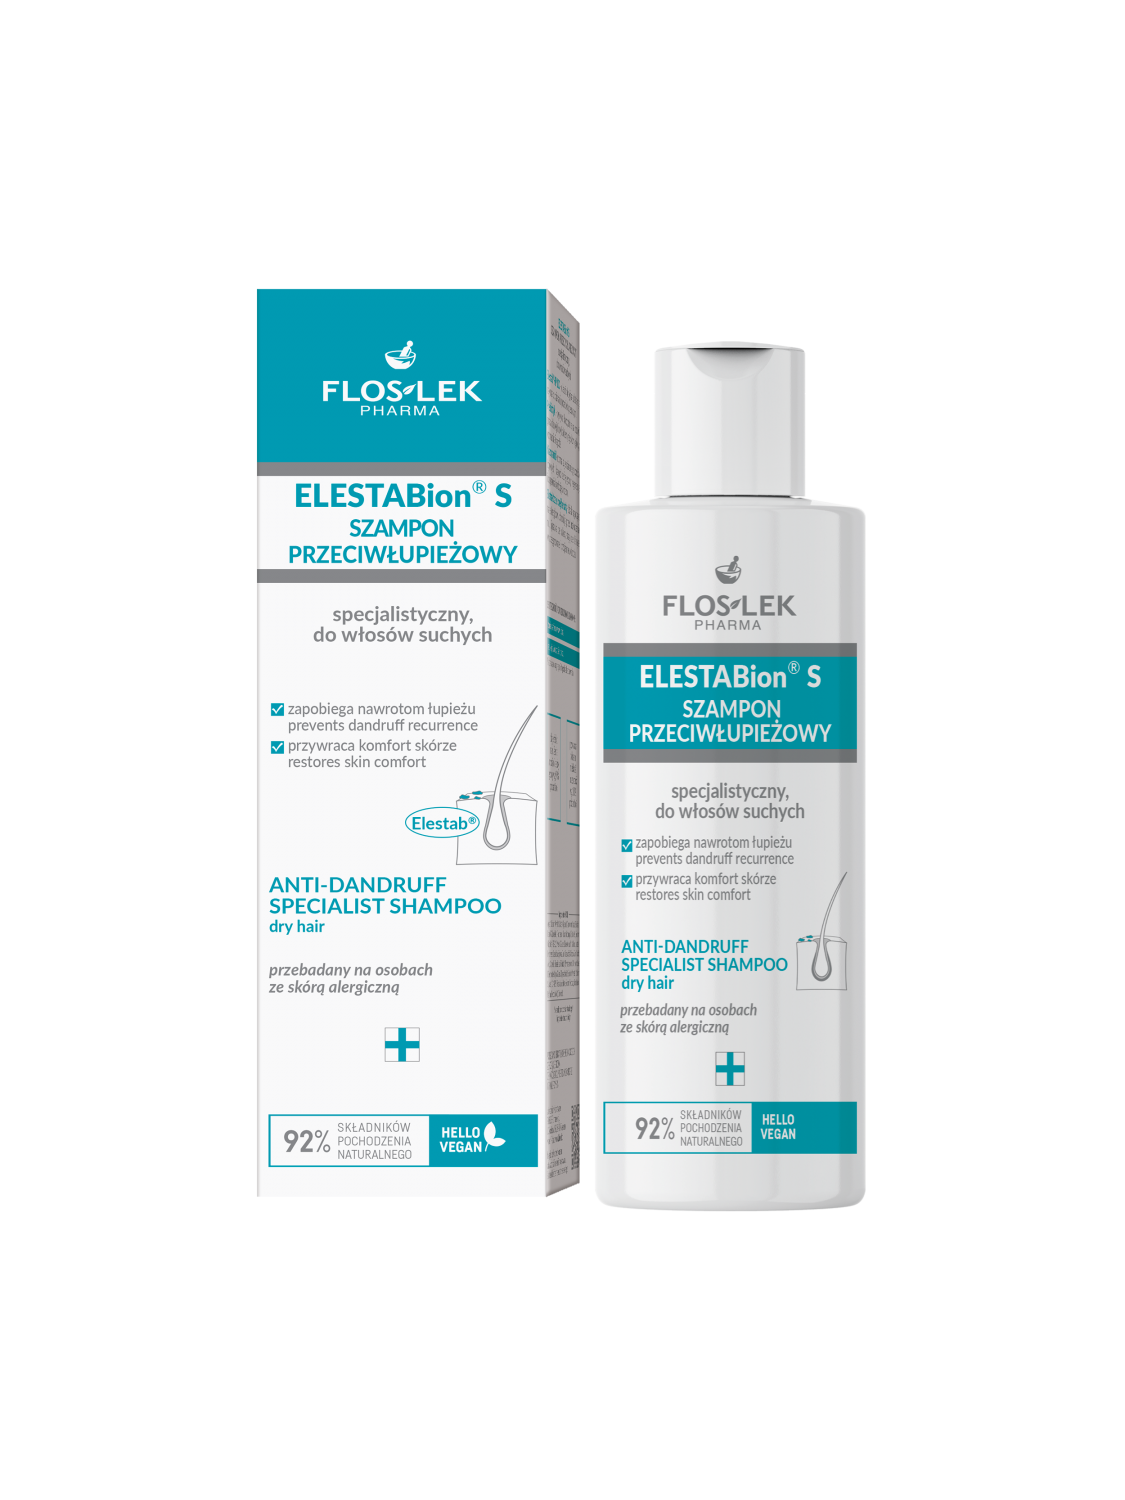 ELESTABion® S Spezial-Shampoo gegen trockene Schuppen 150 ml - Floslek